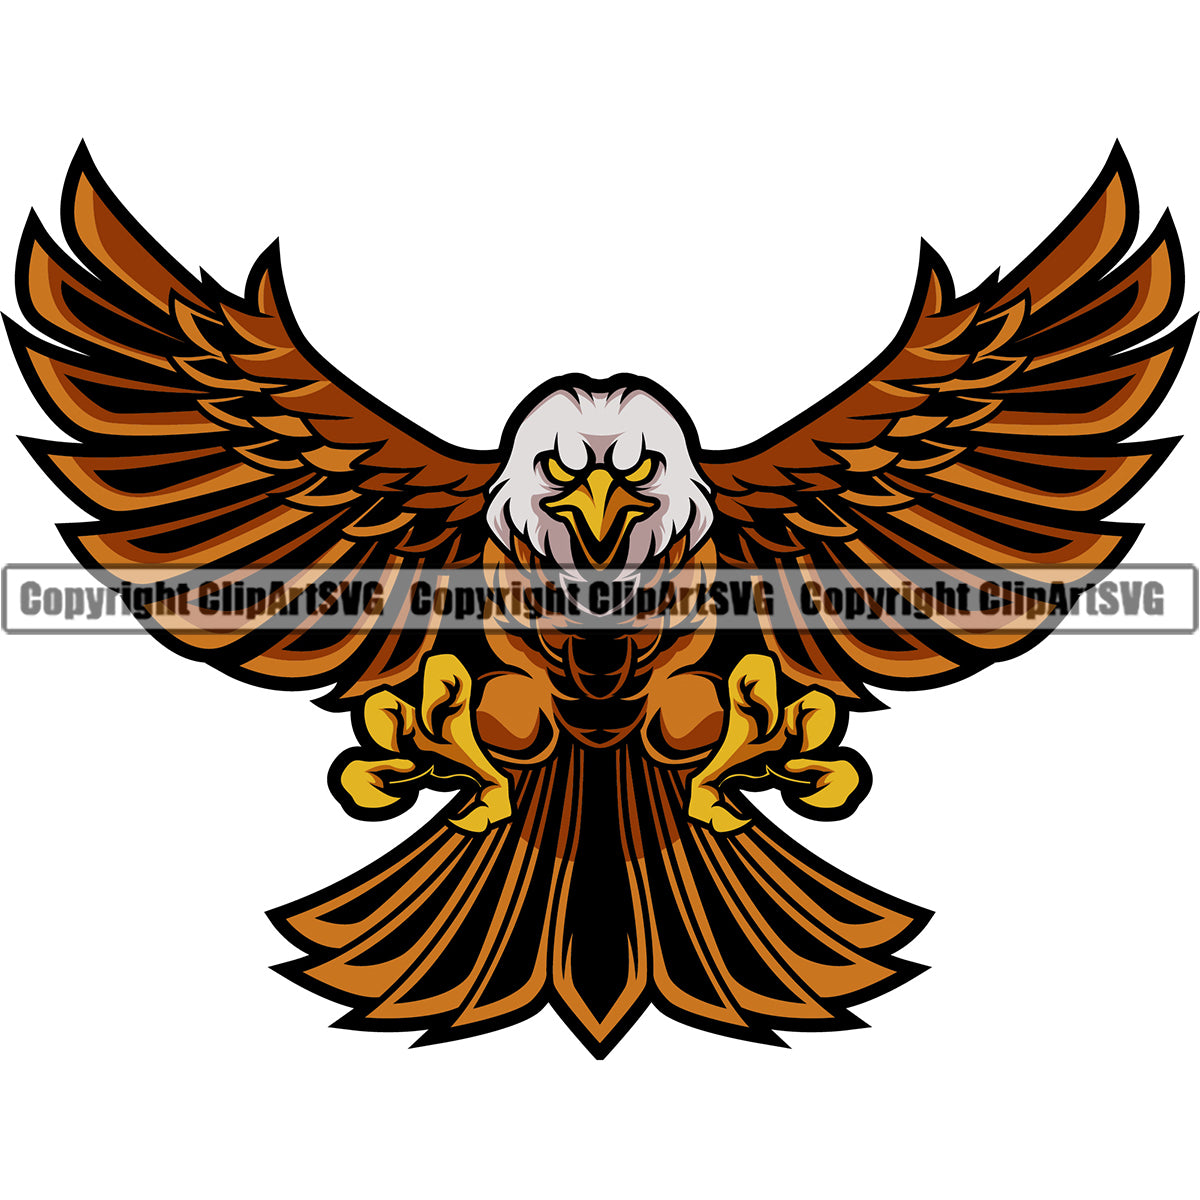 Eagles Football, Eagles Cheer, Eagles Mascot SVG PNG